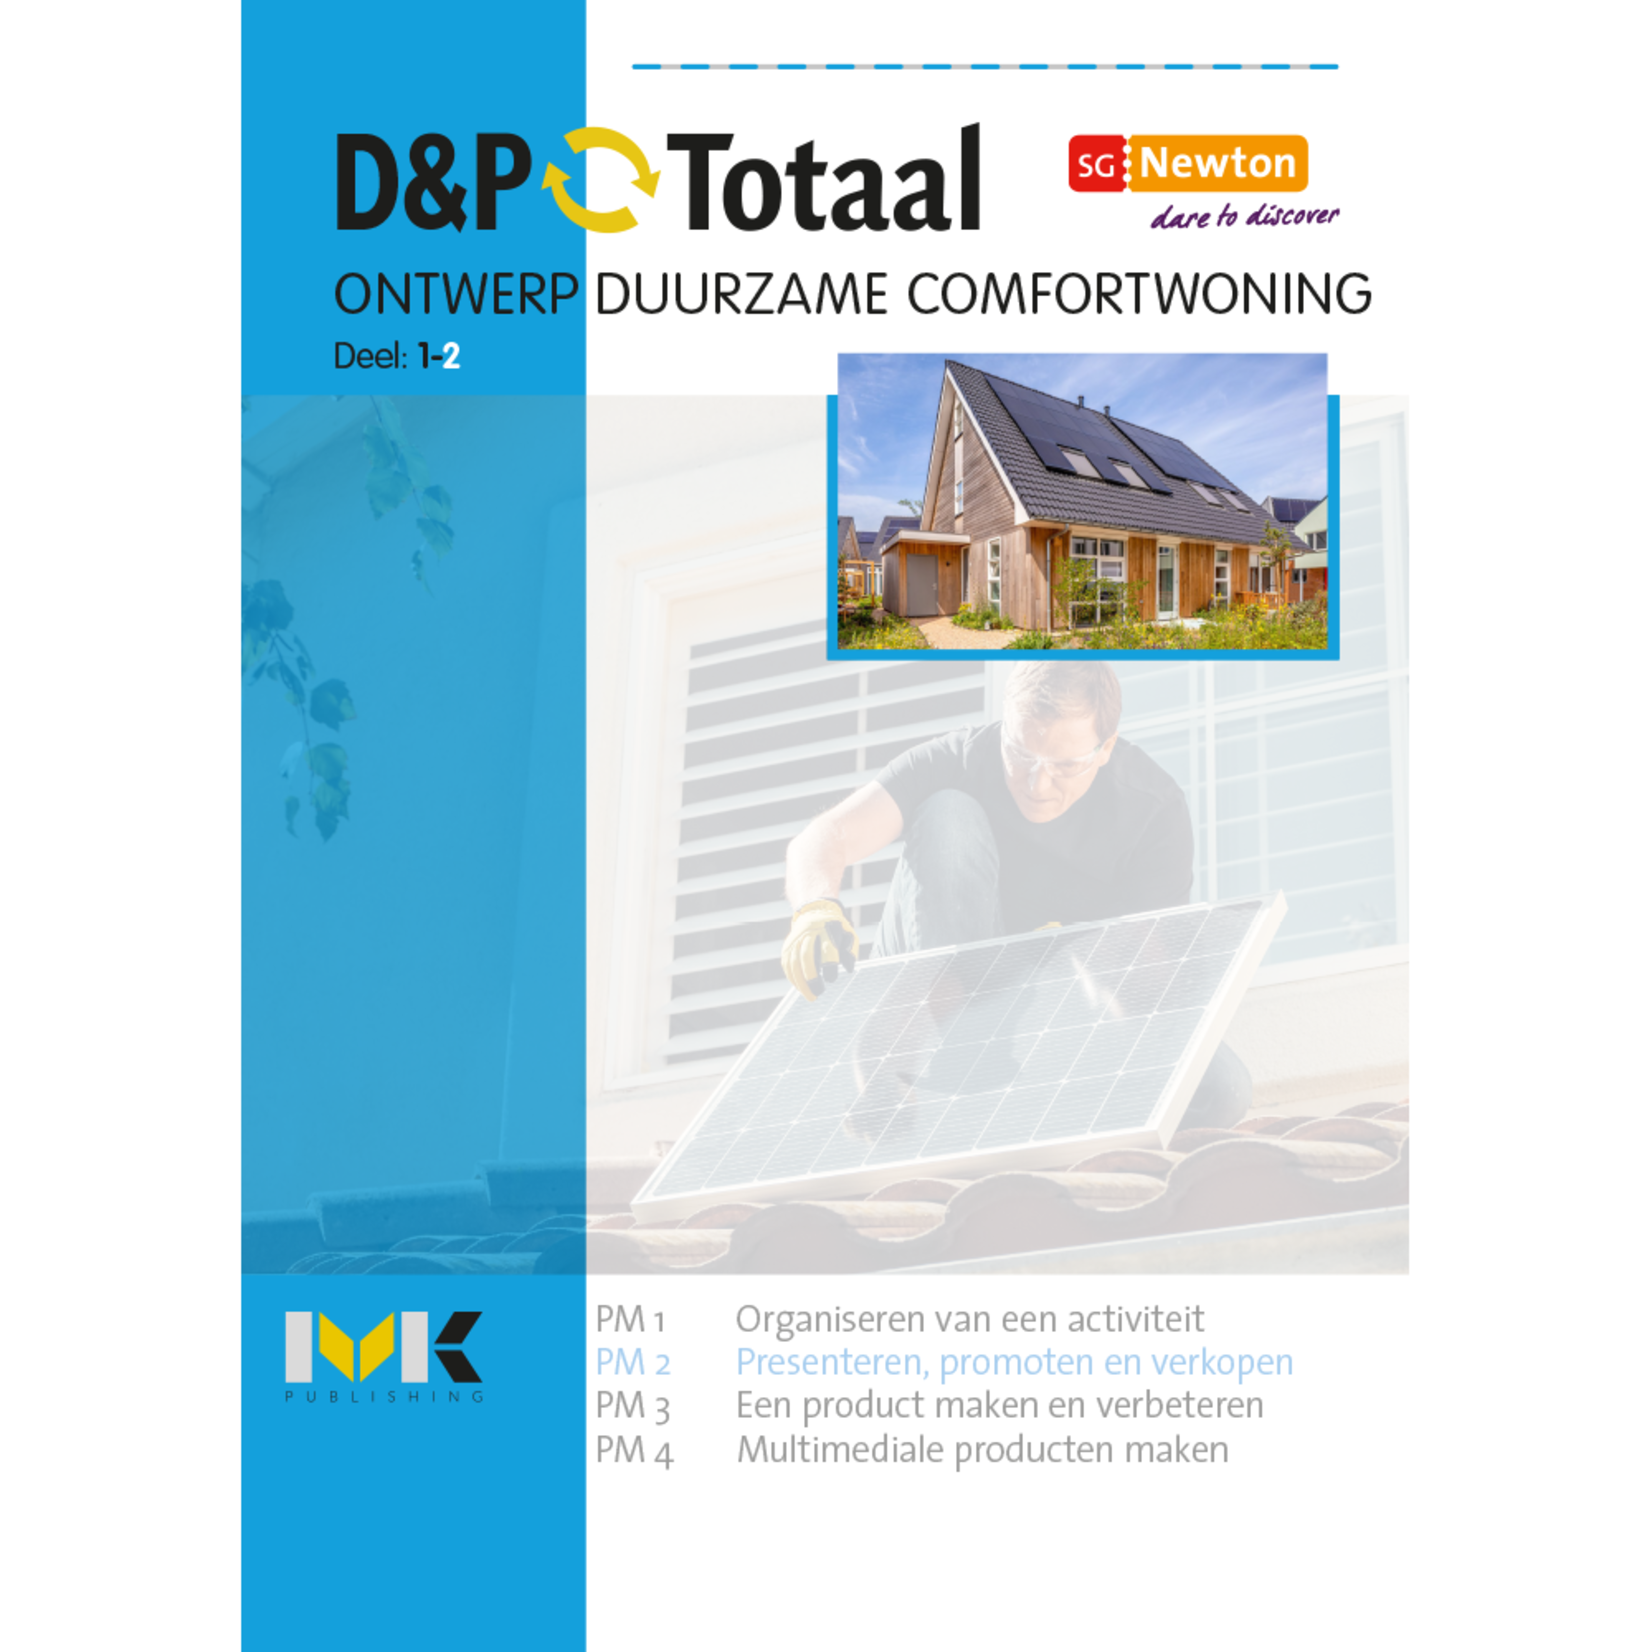 D&P-Totaal - PIE Ontwerp duurzame comfortwoning (PM2/1228)